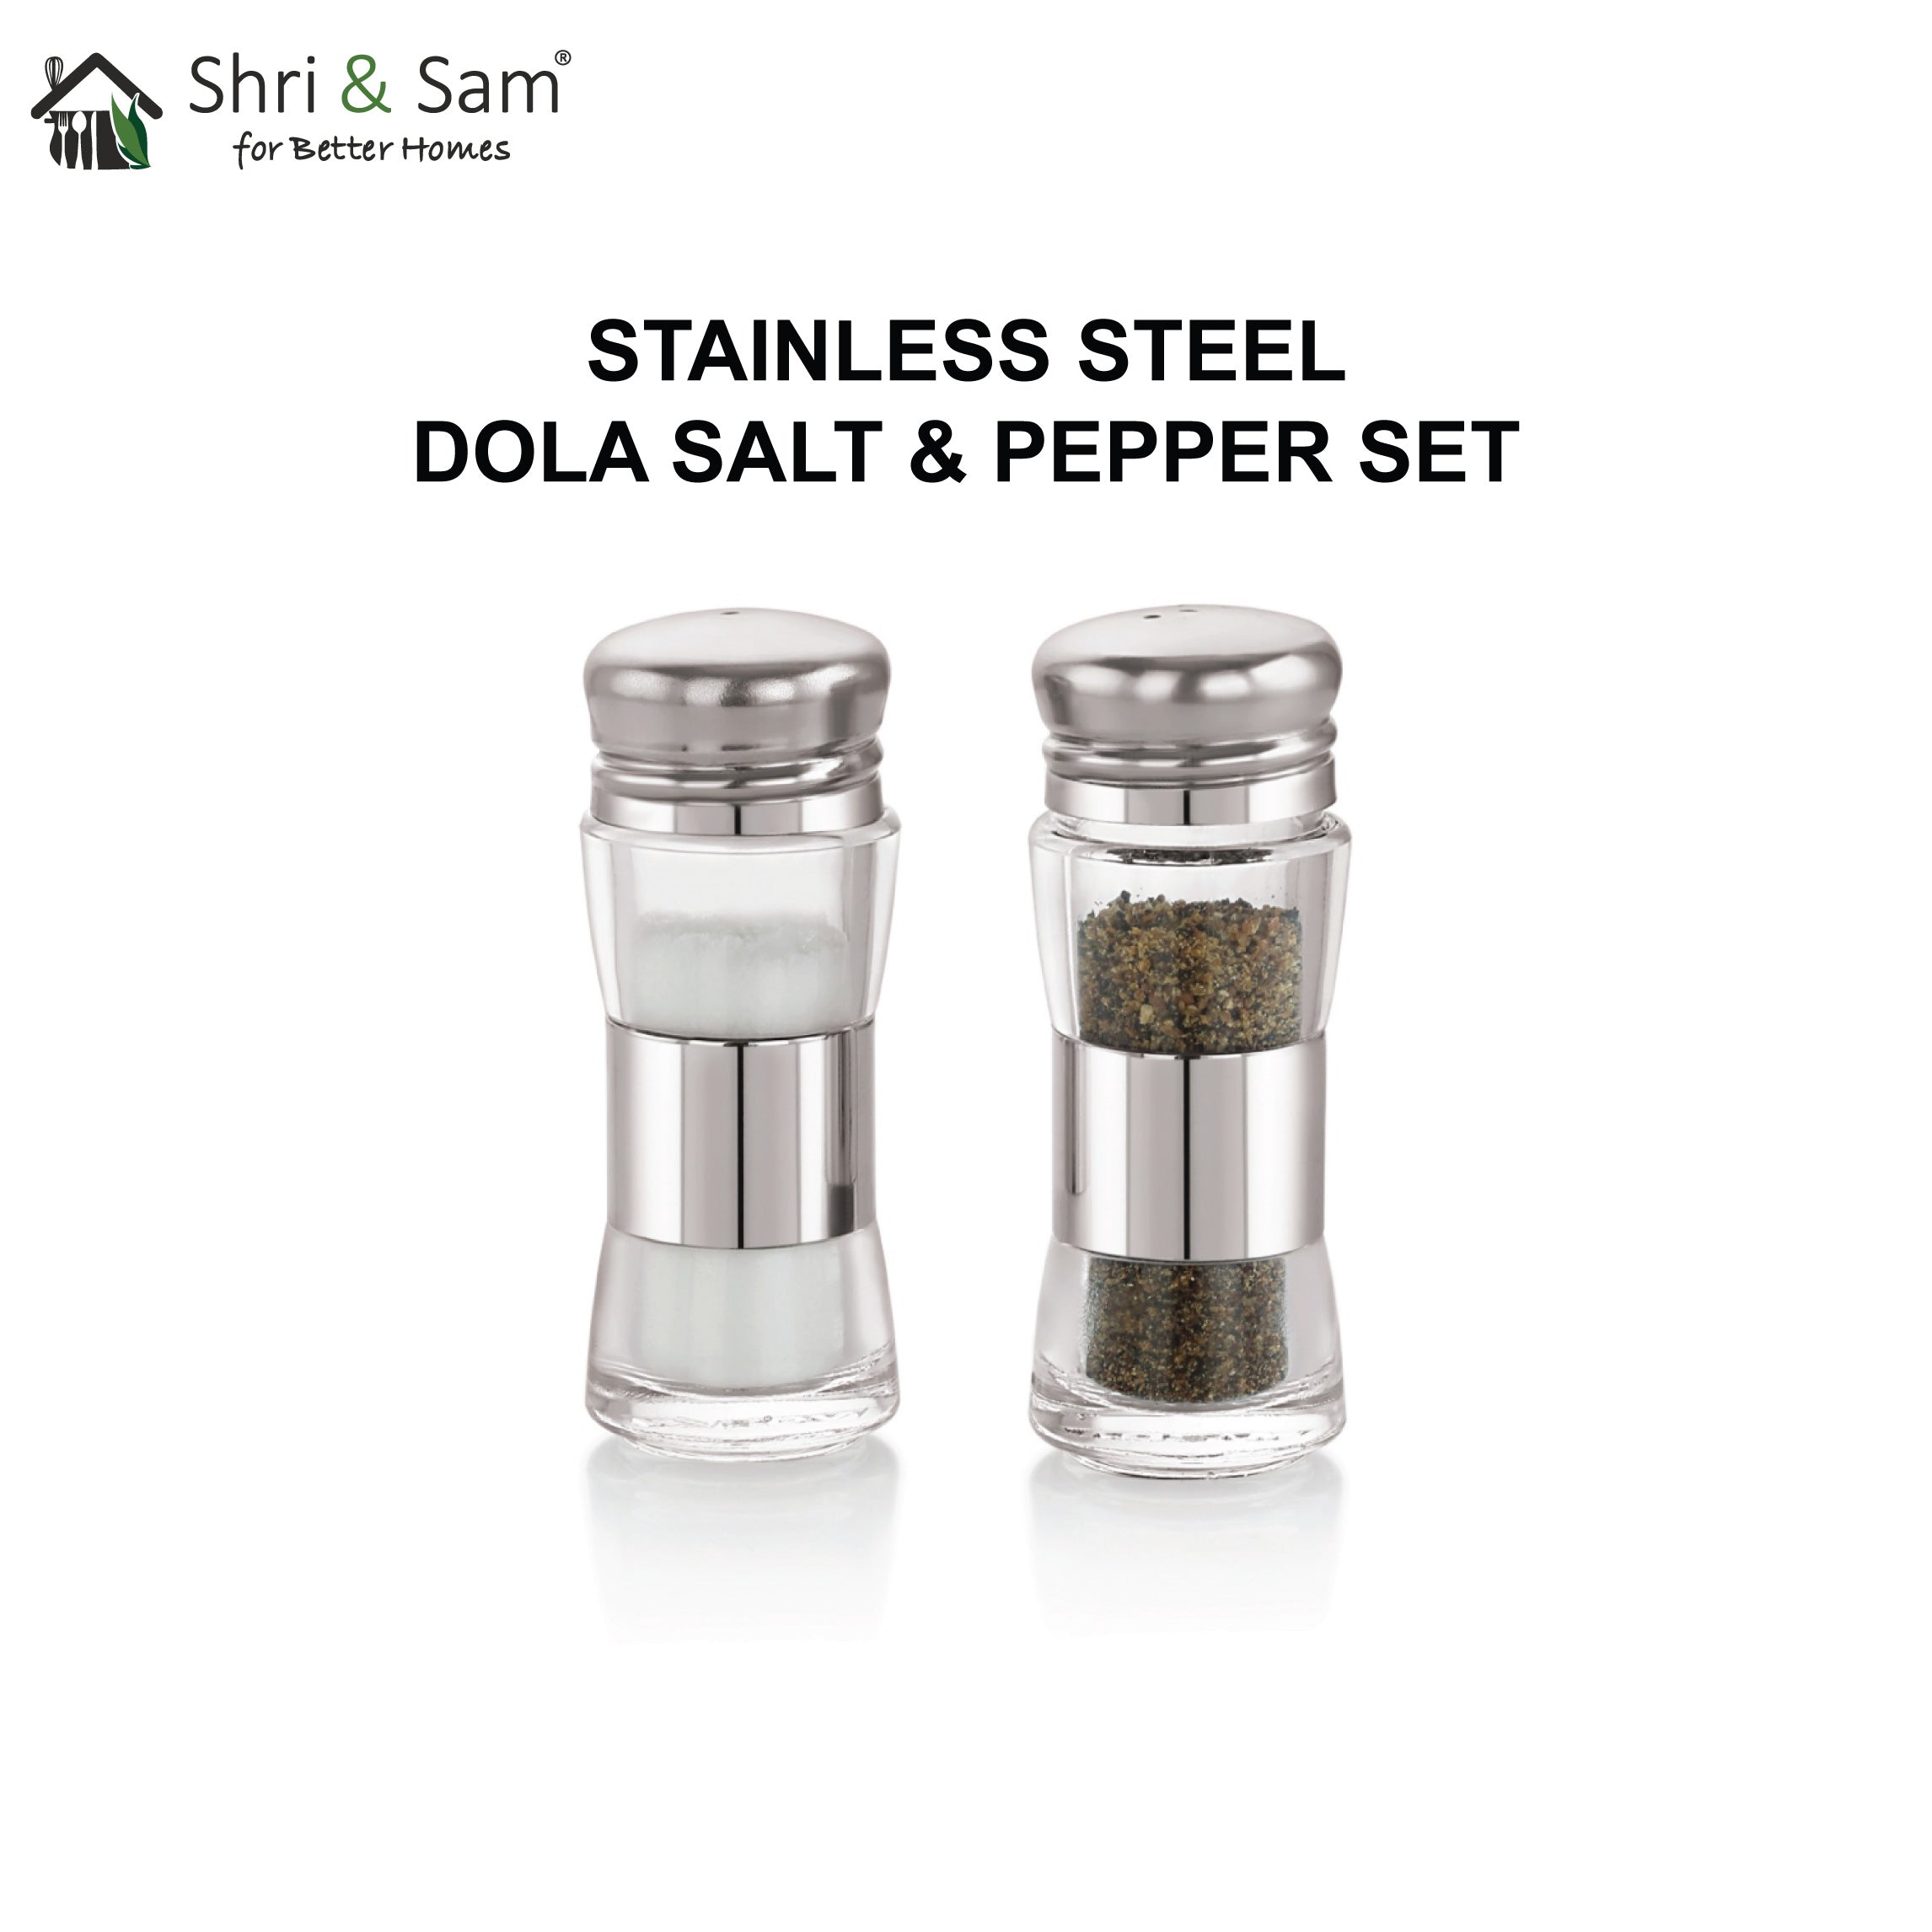 Stainless Steel Dola Salt & Pepper